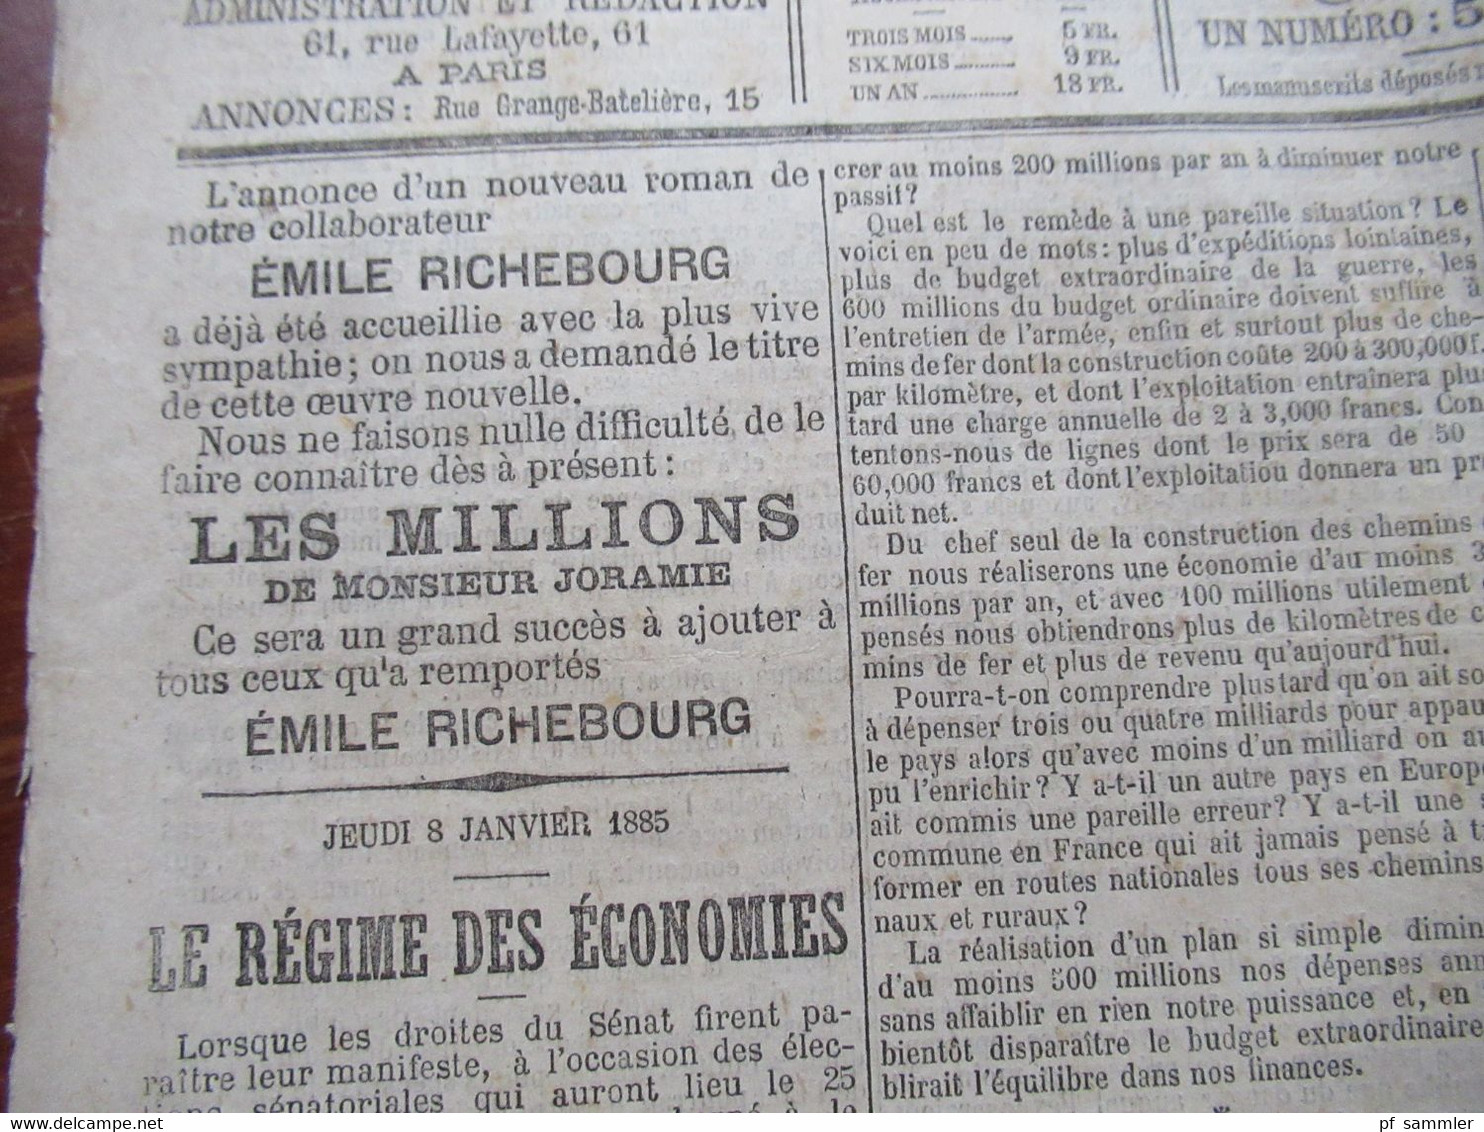 Frankreich 9.1.1885 Paris Zeitung Le Petit Journal 61 Rue Lafayette A Paris / L'Affaire D'Egypte